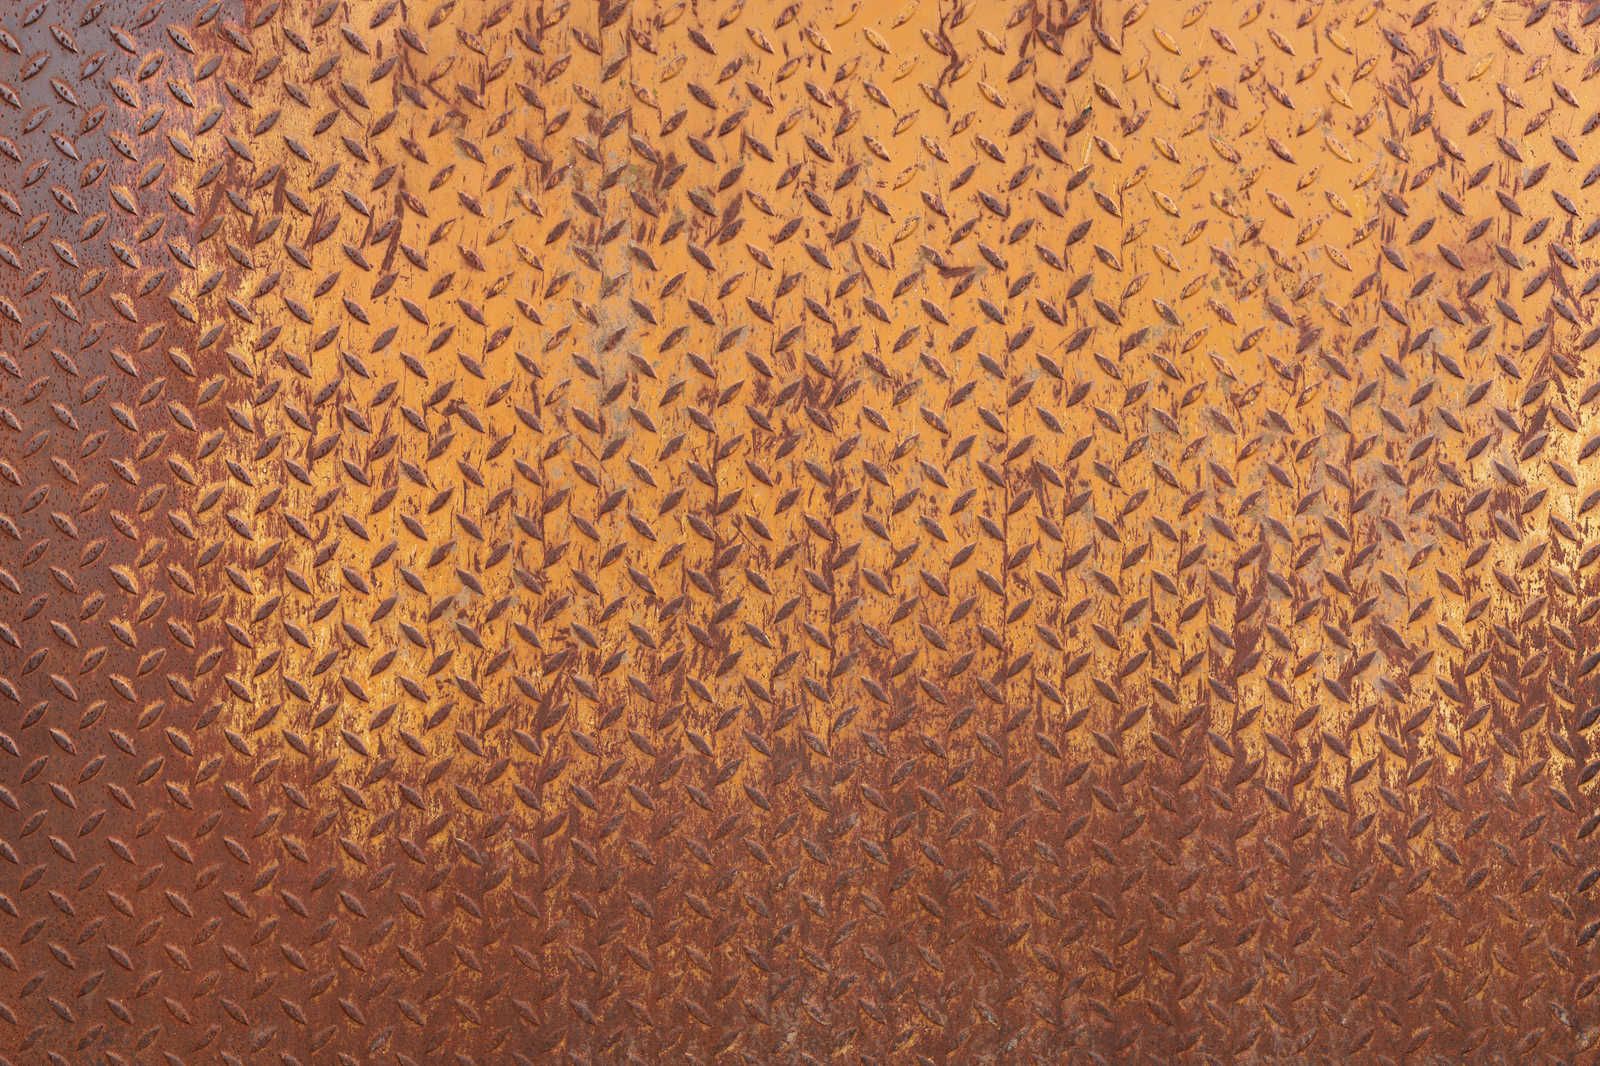             Metalen canvas schilderij Staalplaat Roest met Diamantpatroon - 1,20 m x 0,80 m
        